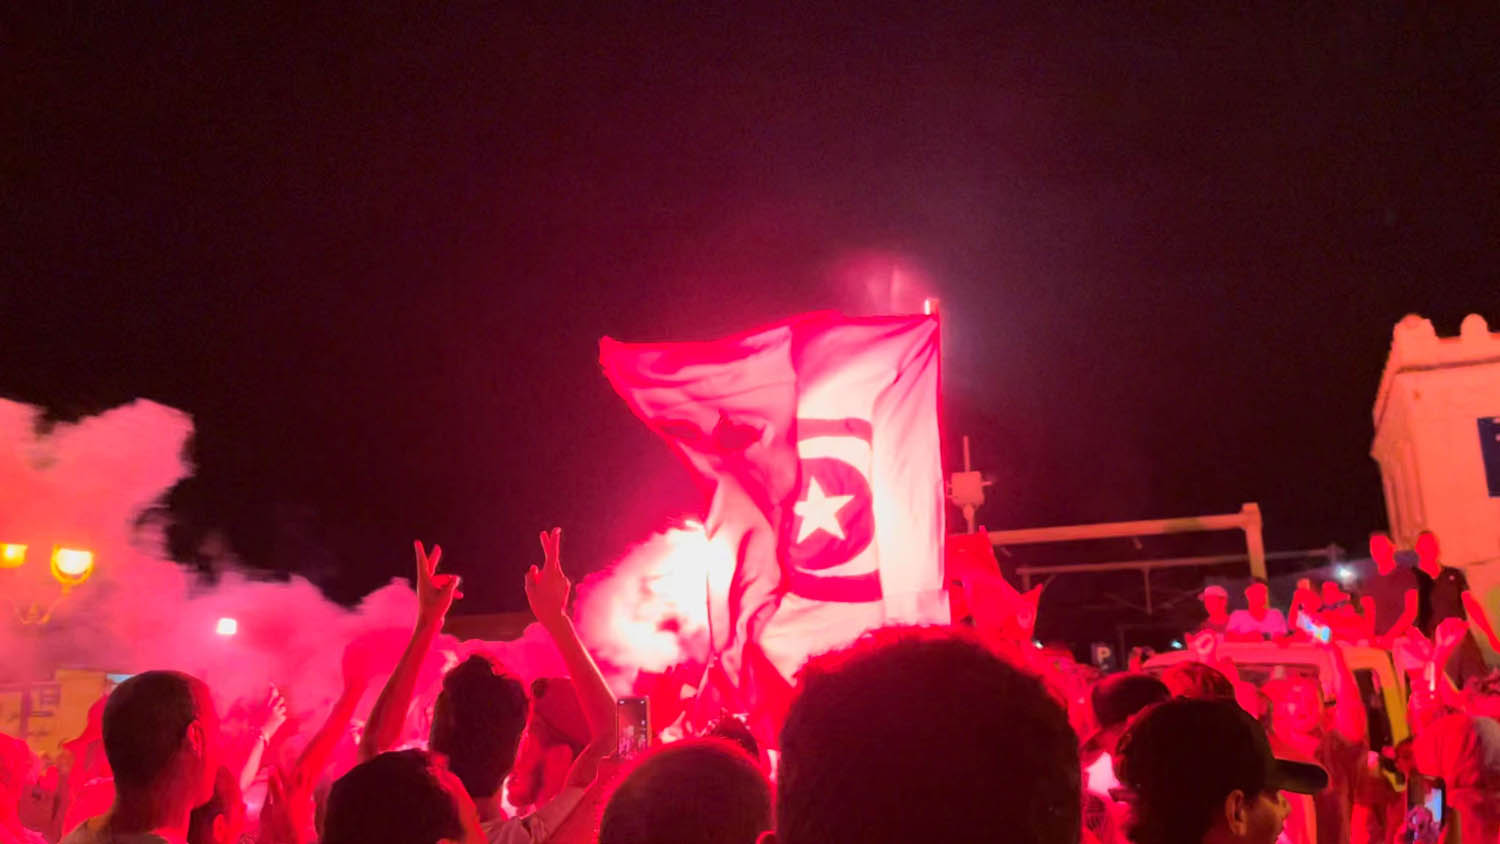 تونسيون يحتفلون بقرارات الرئيس قيس سعيد اقالة الحكومة وتجميد عمل البرلمان